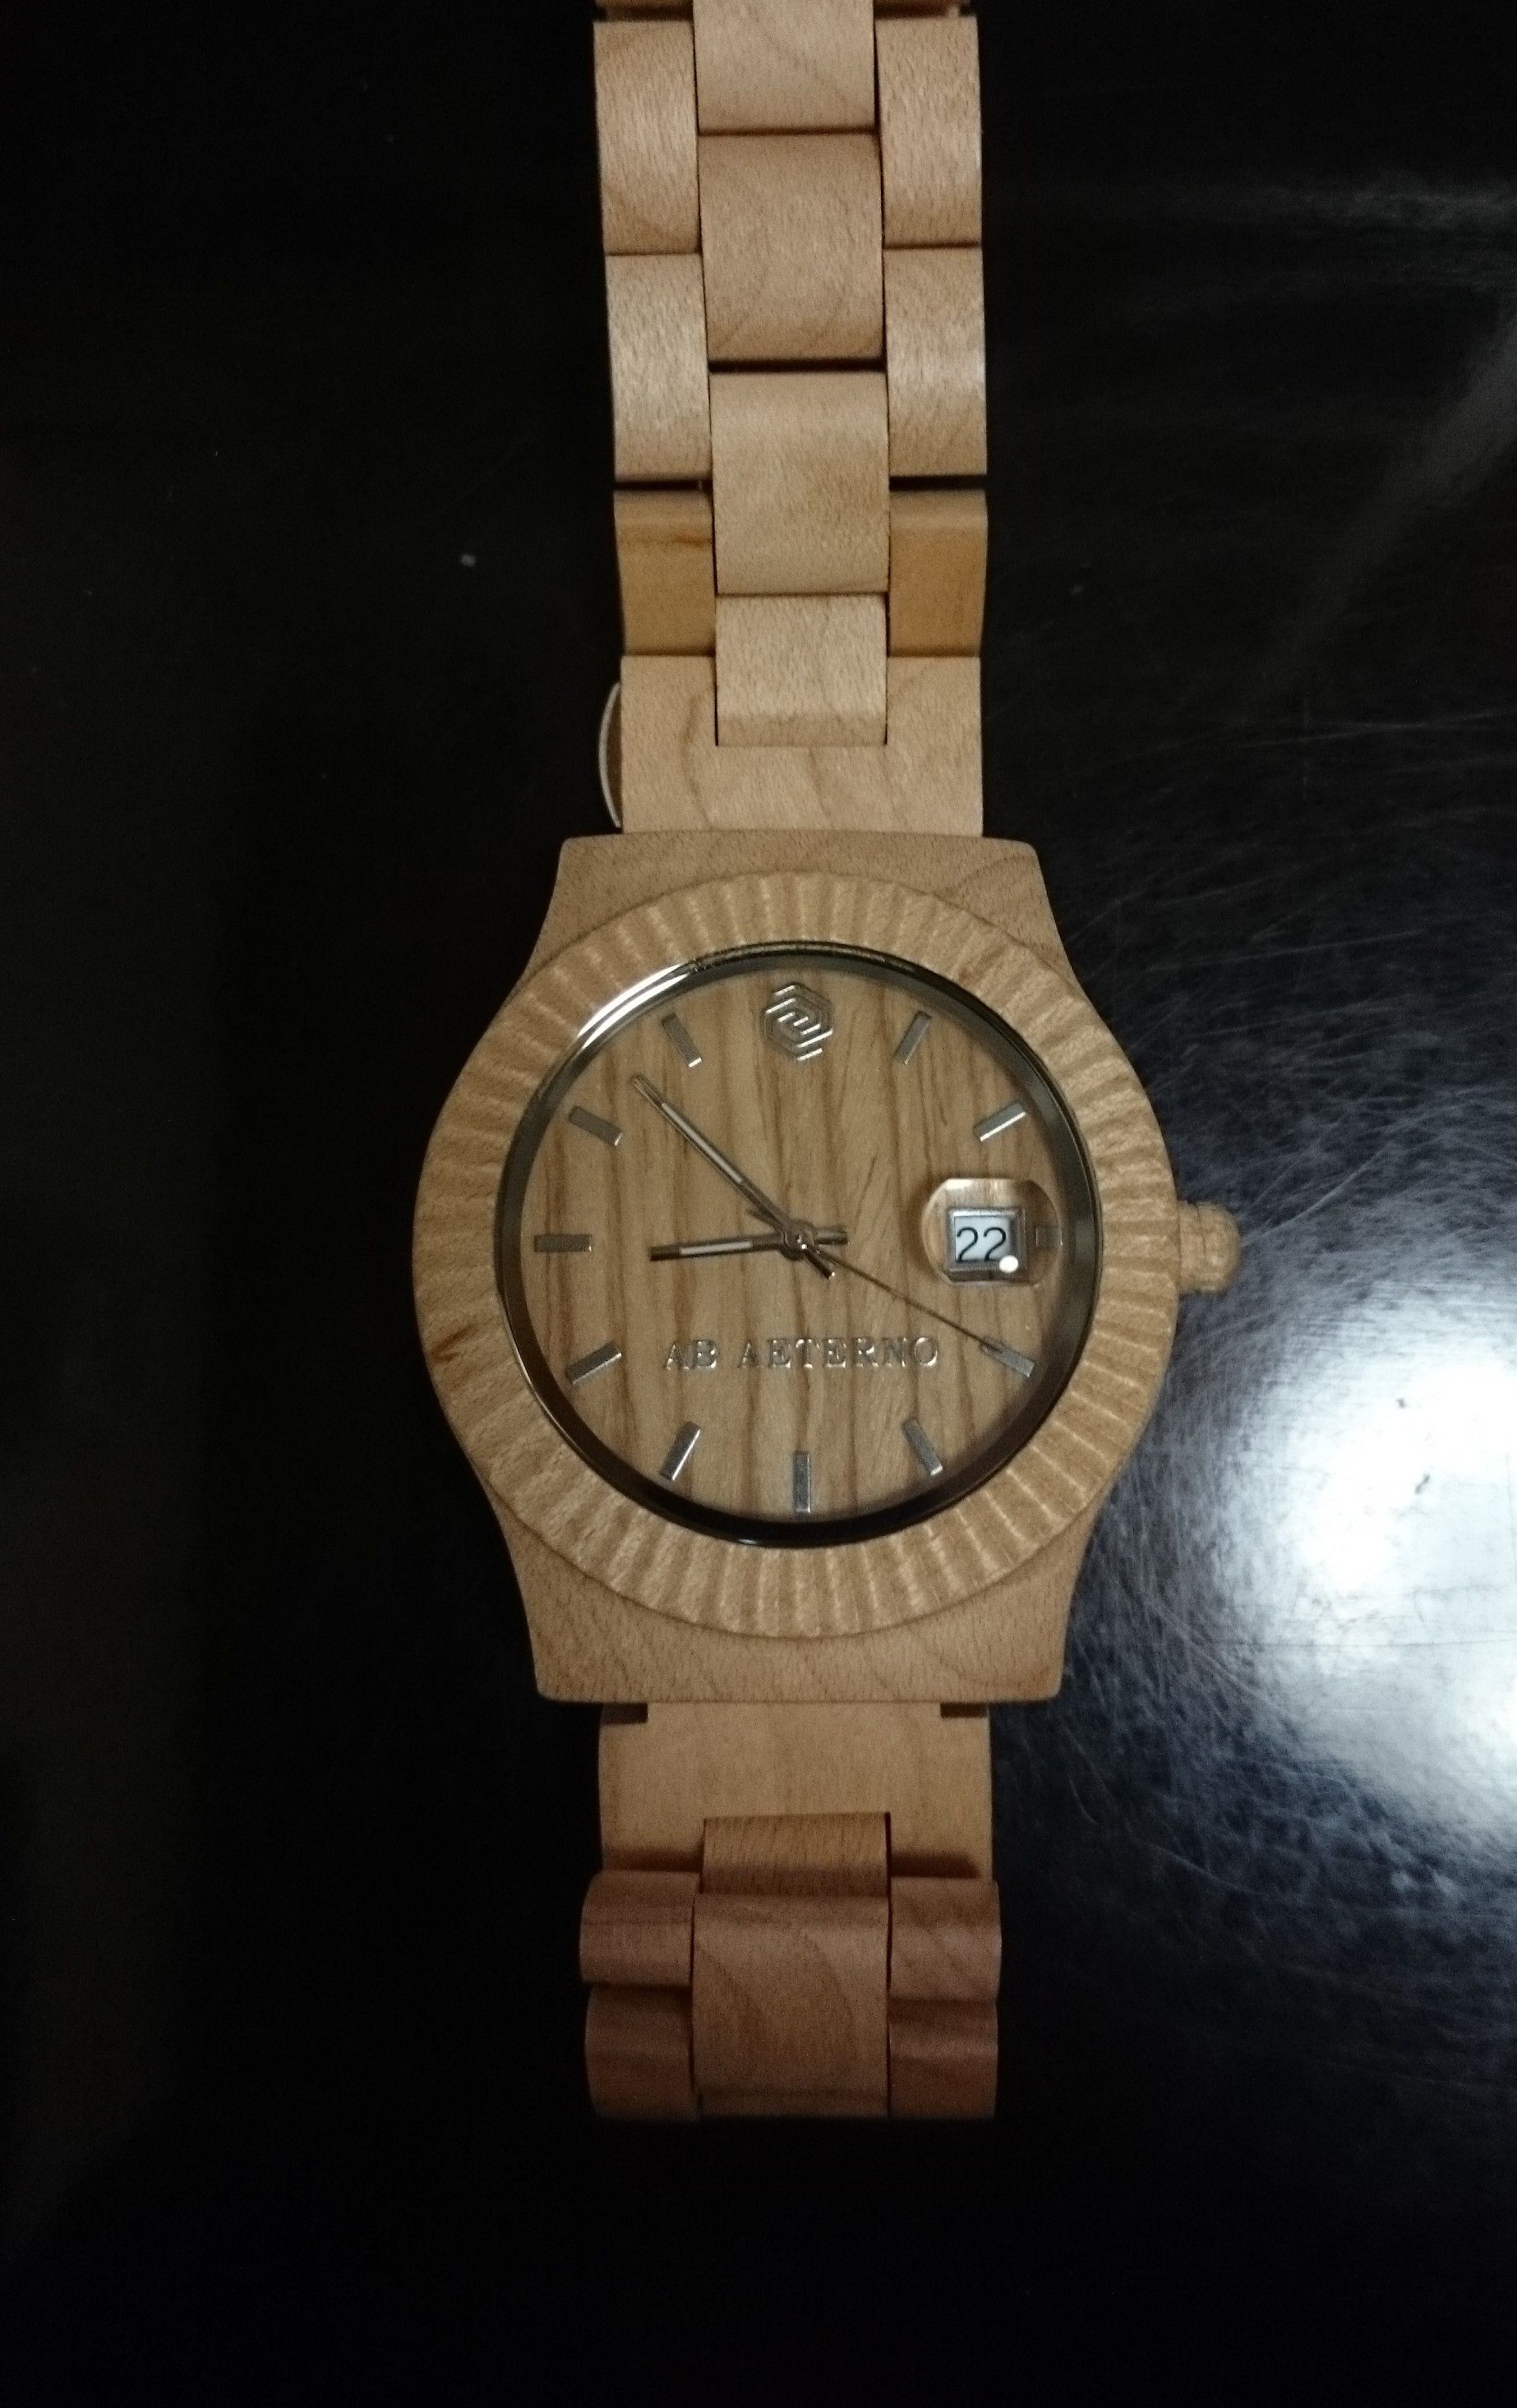 木製腕時計AB AETERNO(アバテルノ）一年経過後のエイジング状況です 